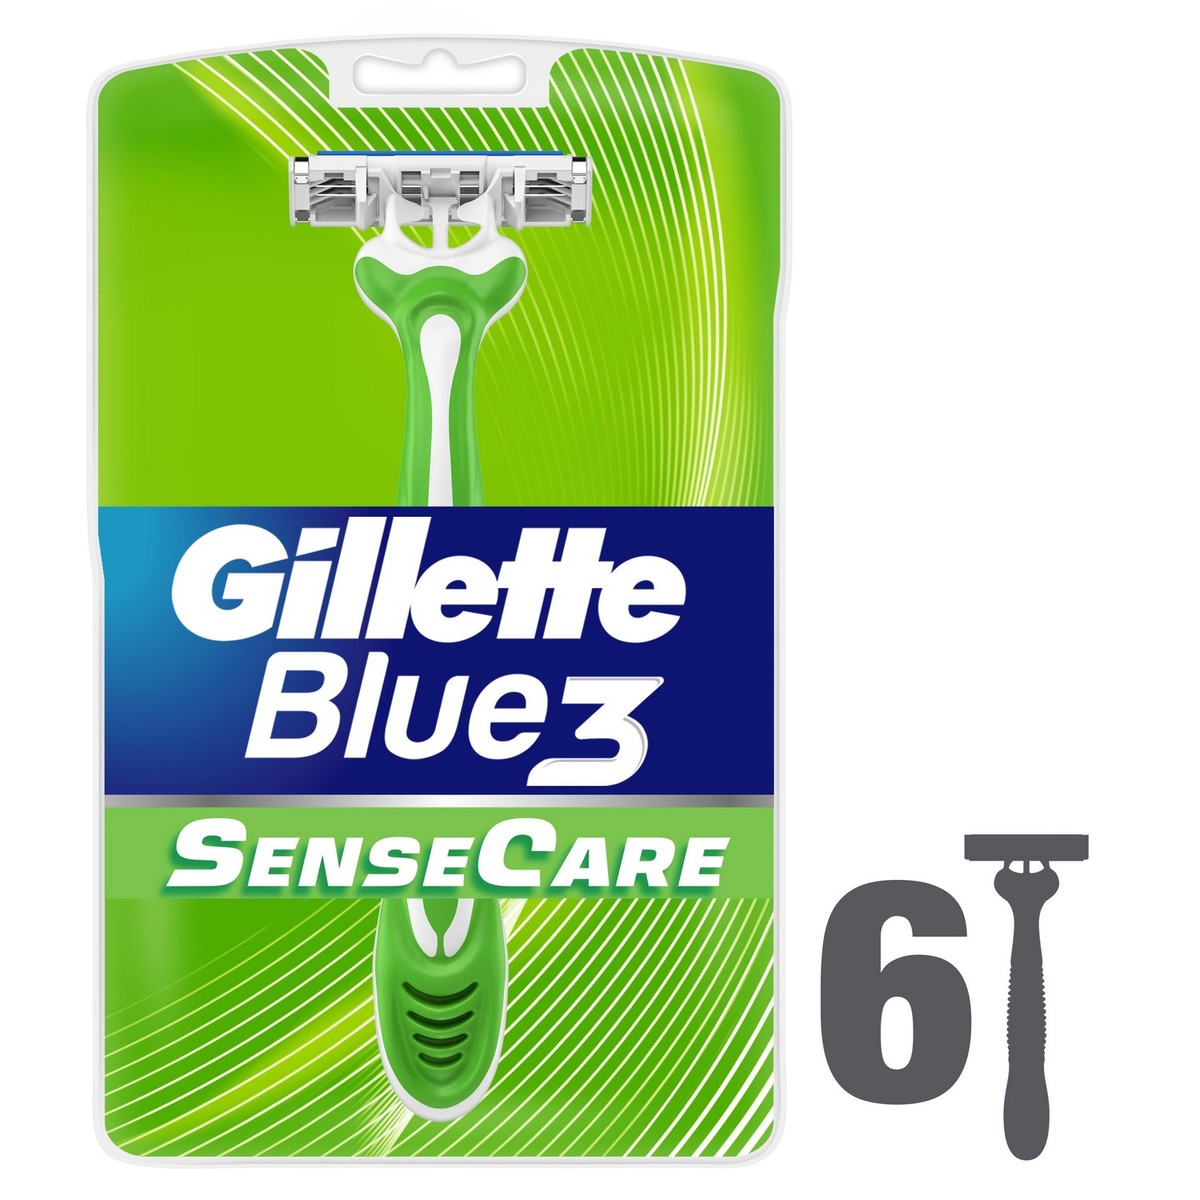 Gillette Blue3 Sense Care Men’s Disposable Razors 6pcs